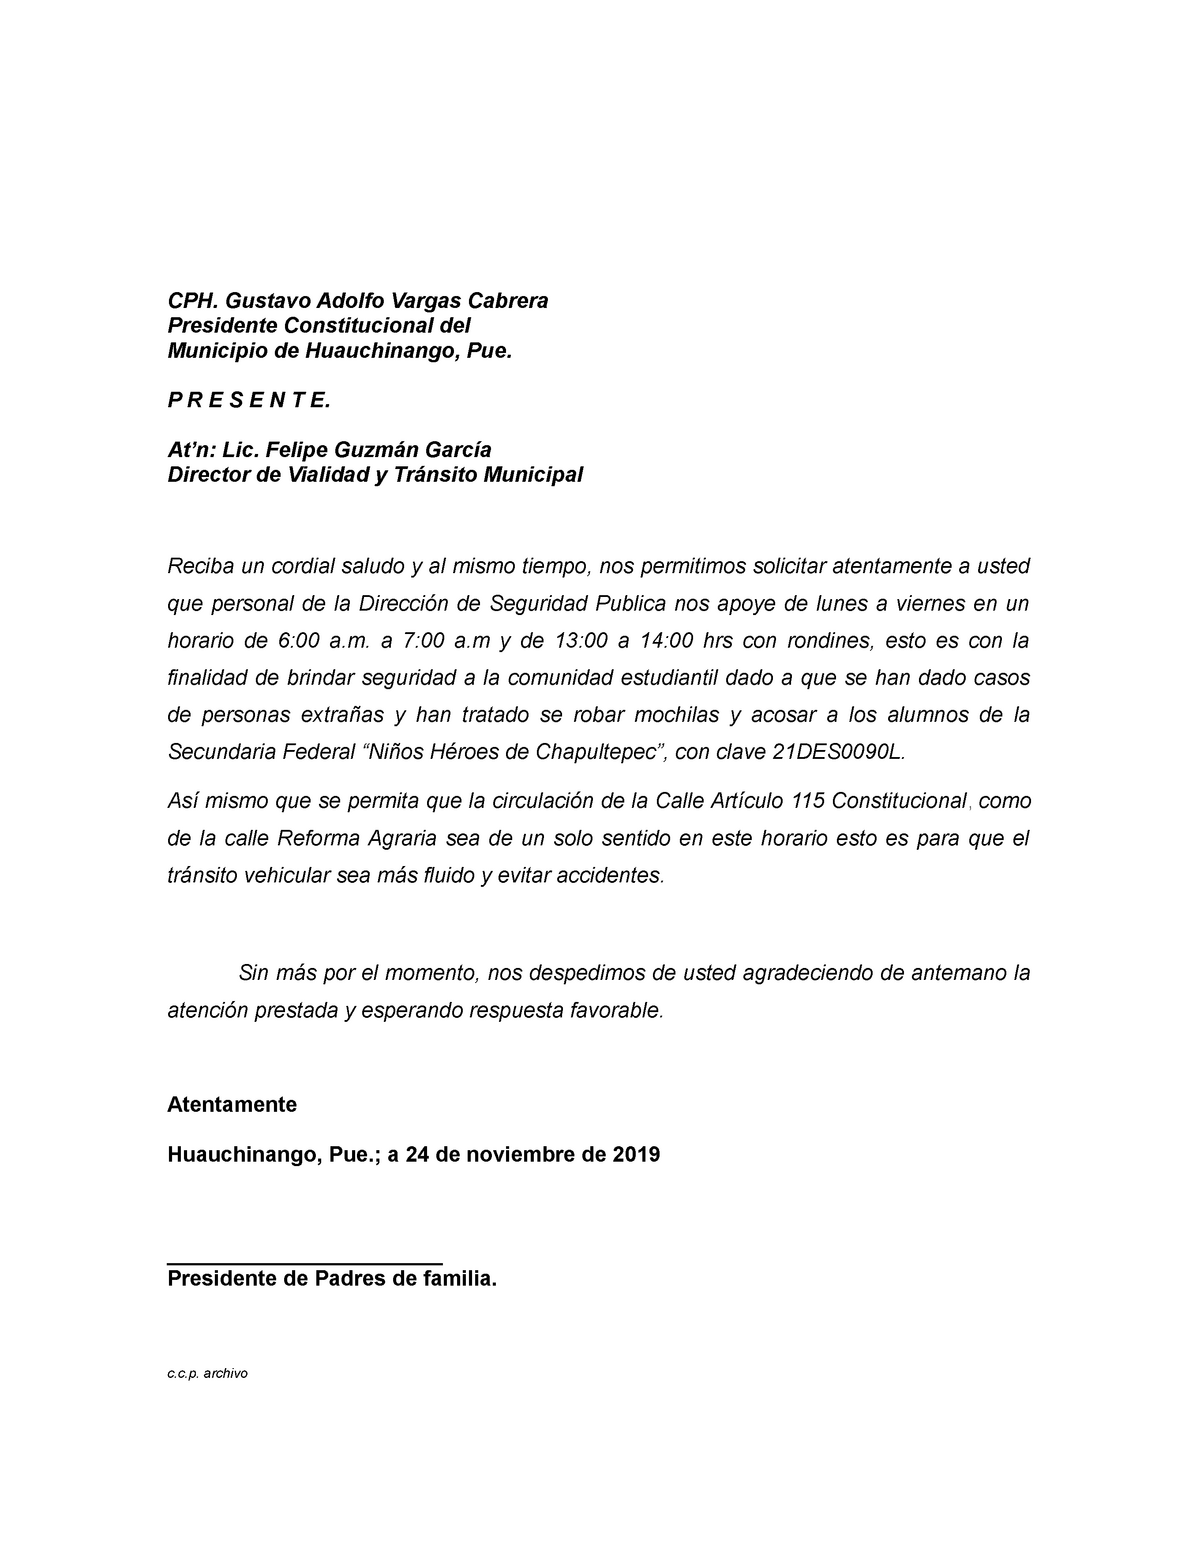 Oficio solicitud de patrullaje en la Secundaria - CPH. Gustavo Adolfo  Vargas Cabrera Presidente - Studocu